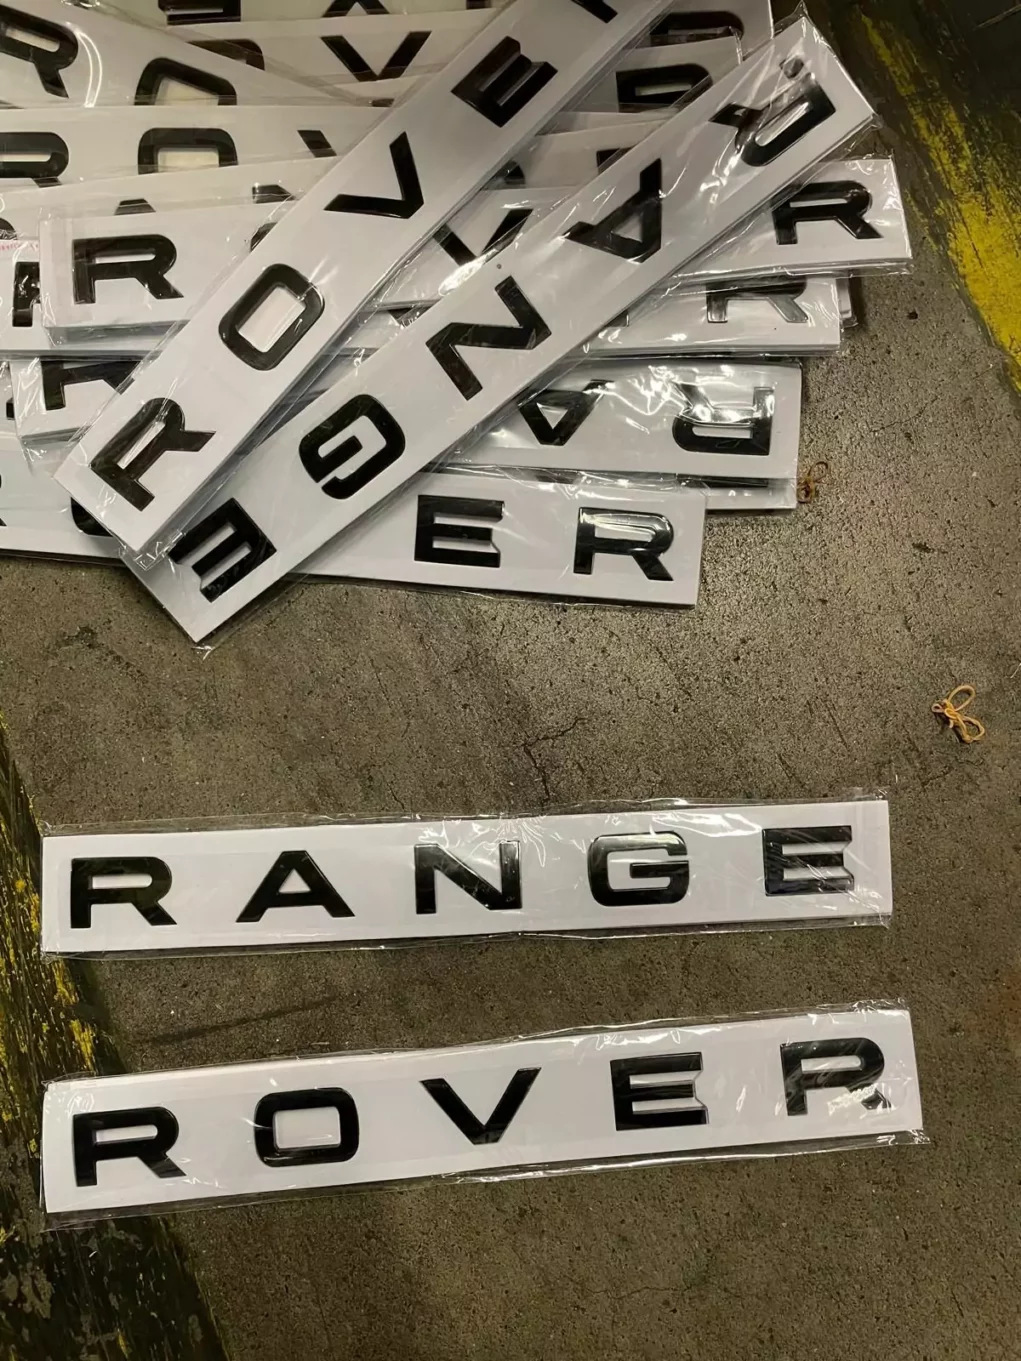 Bild auf 5min.at zeigt Sticker mit der Aufschrift "Range Rover".